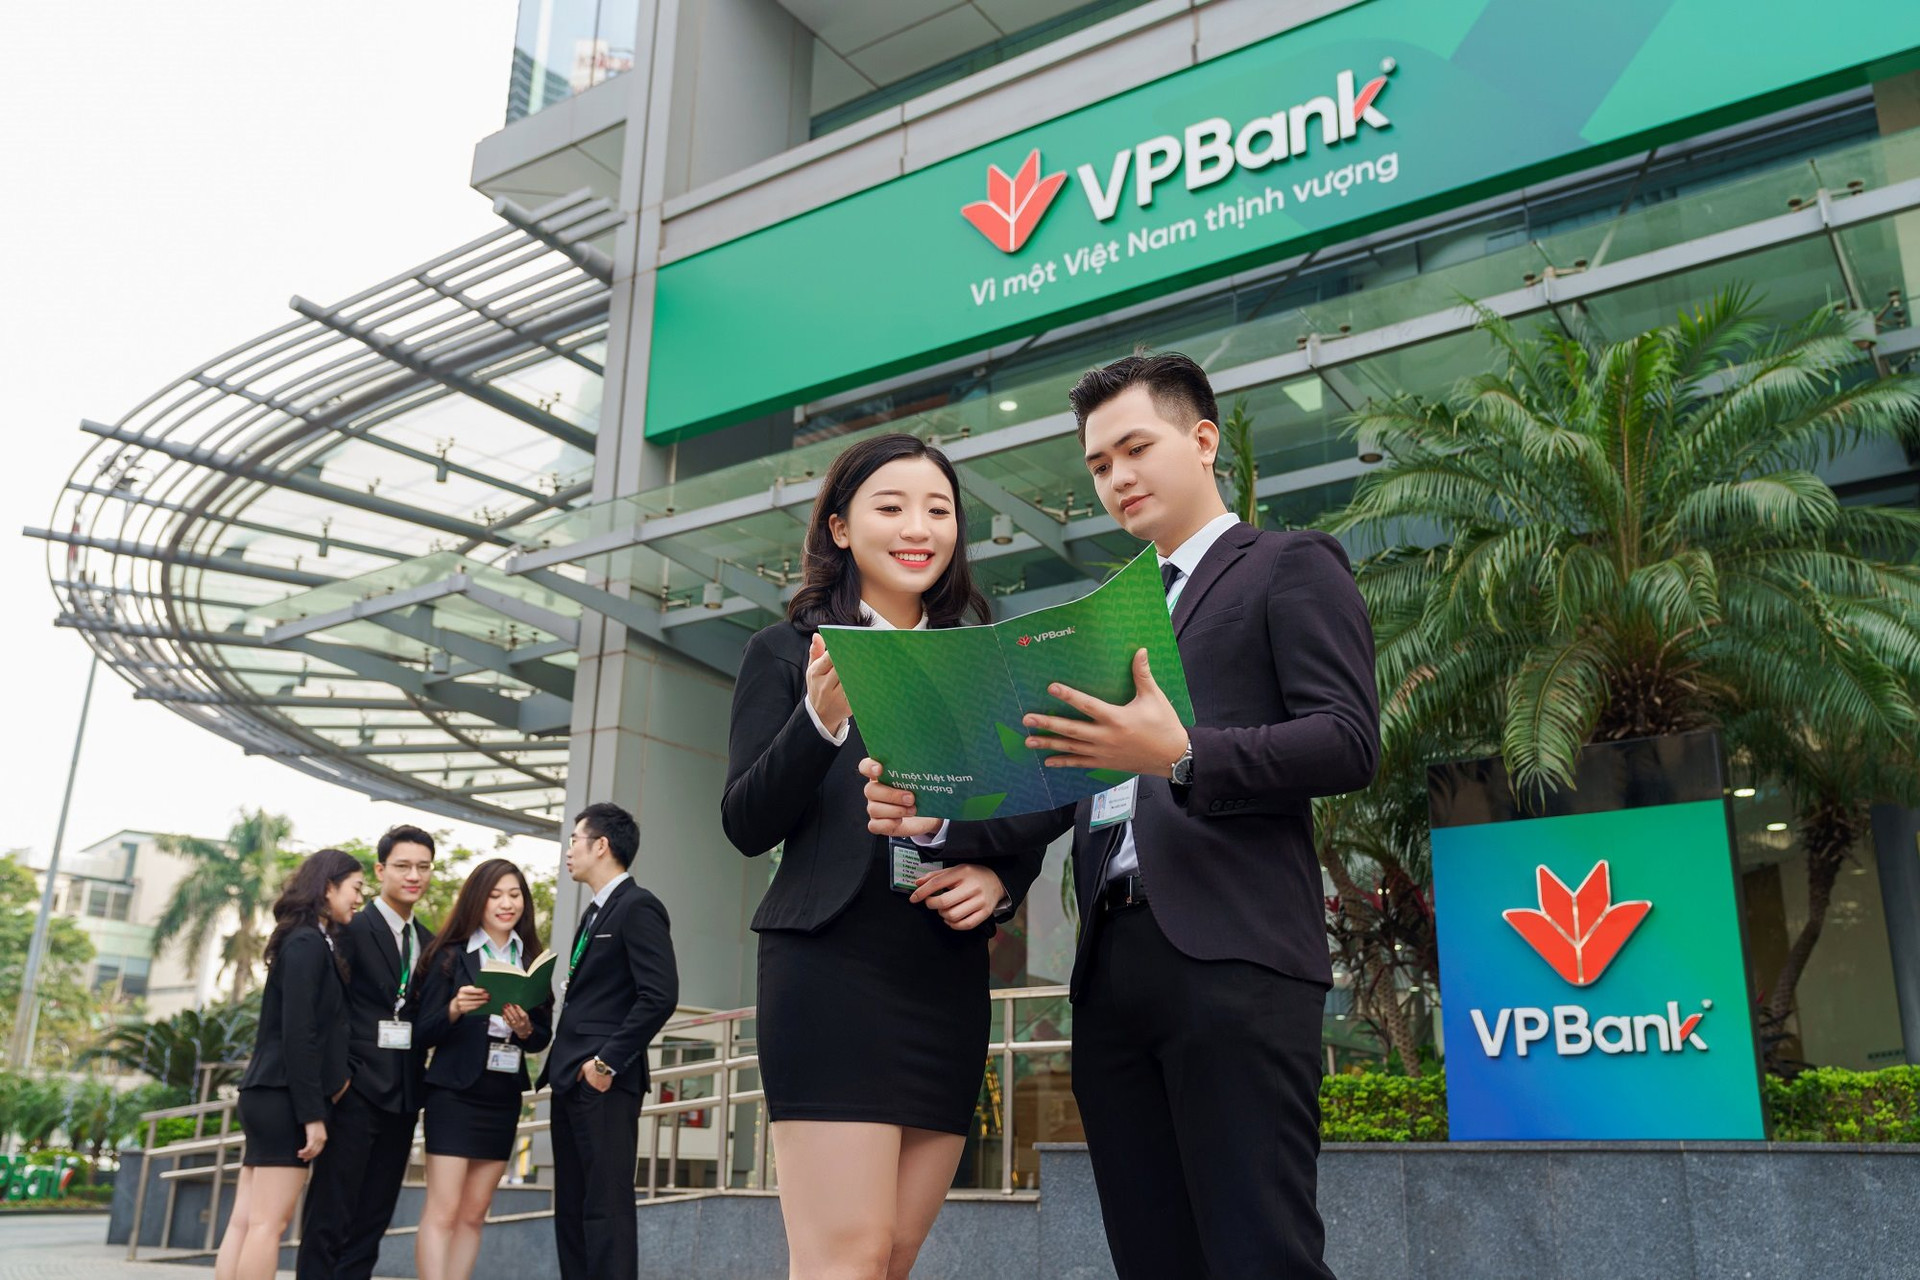 VPBank ứng dụng công nghệ xác thực giao dịch bằng khuôn mặt vân tay